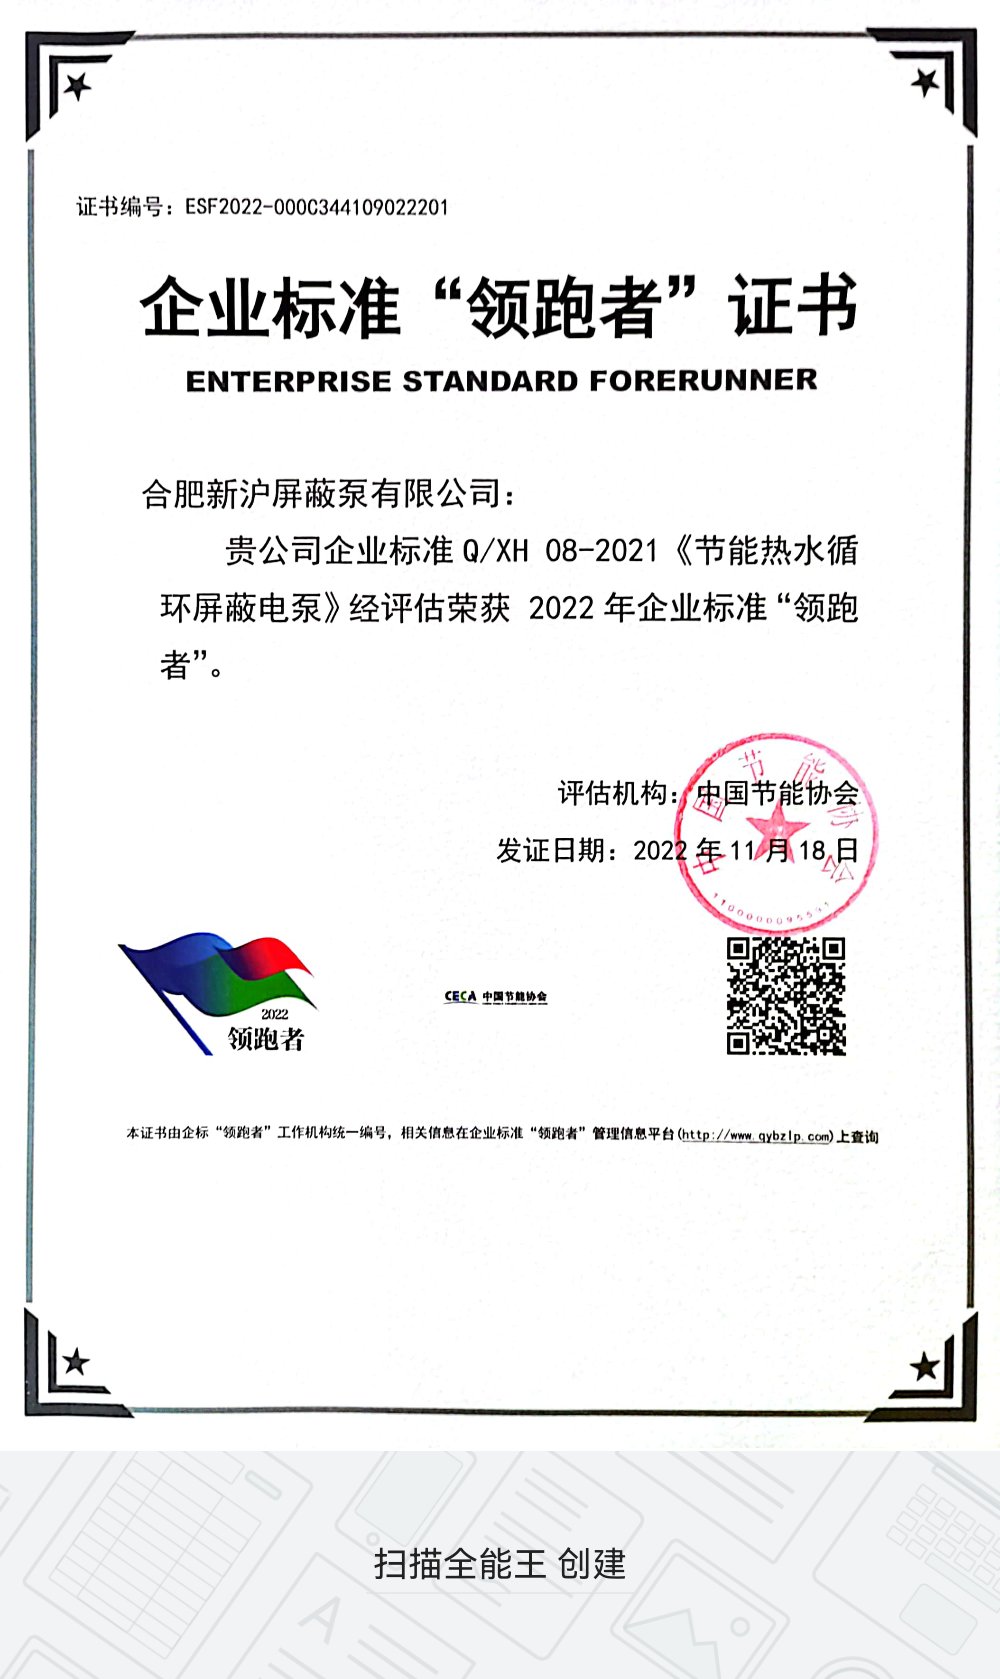 O Enterprise Standard da Shinhoo foi selecionado na lista de “precursores” em 2021
    